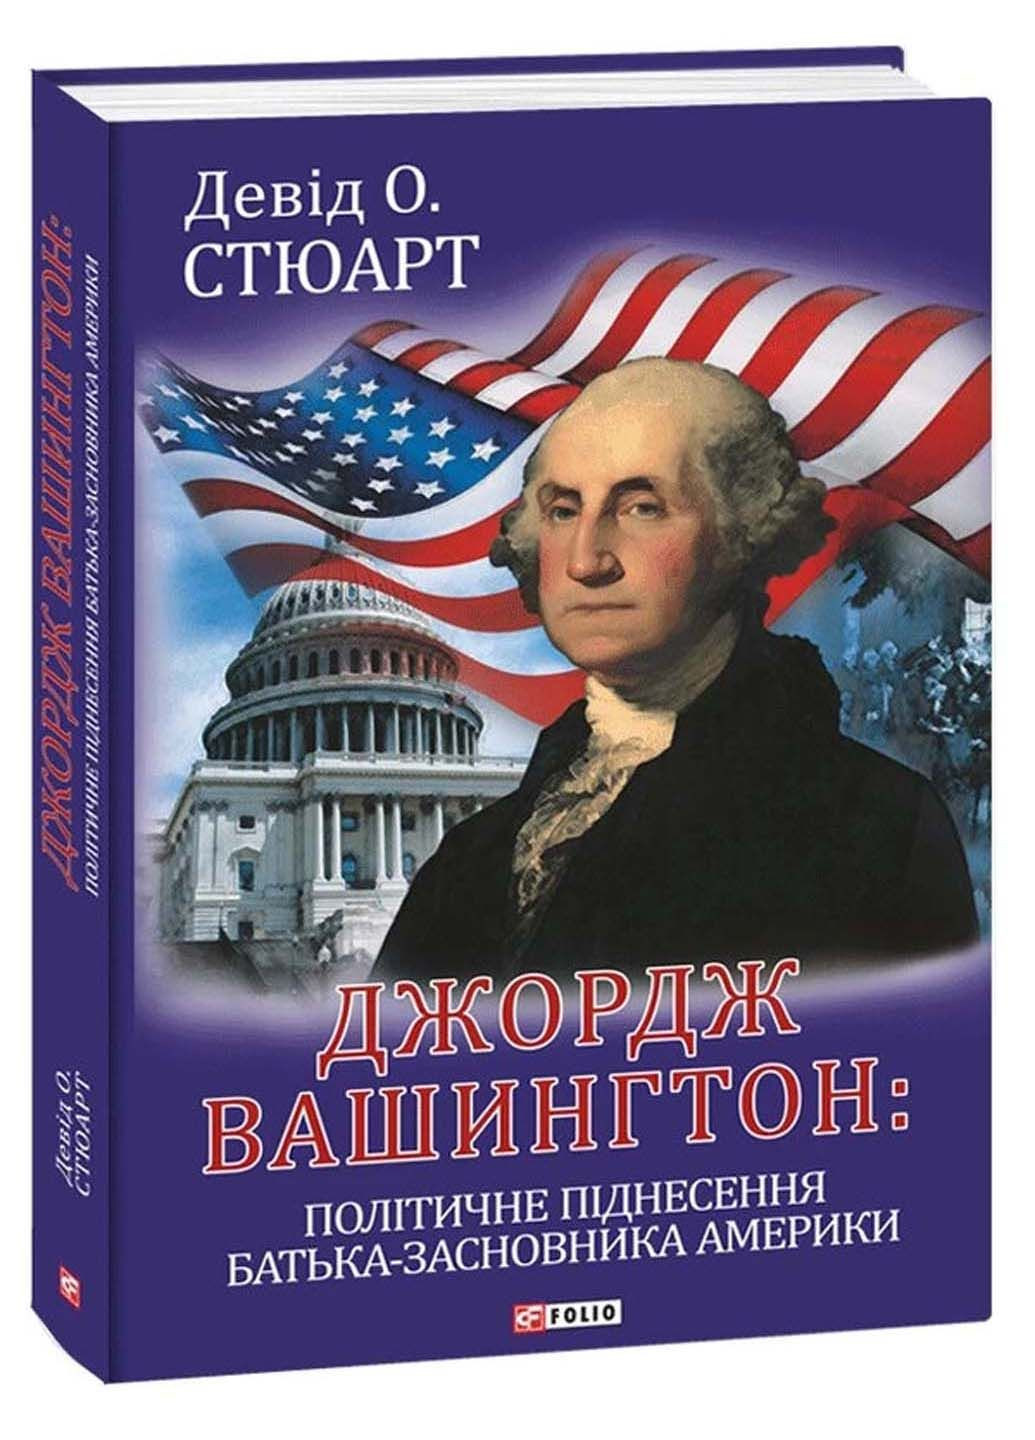 Книга Джордж Вашингтон: політичне піднесення батька-засновника Америки_x005F_x000D_ Девід О. Стюарт 2023р 608 с Фолио (293057893)